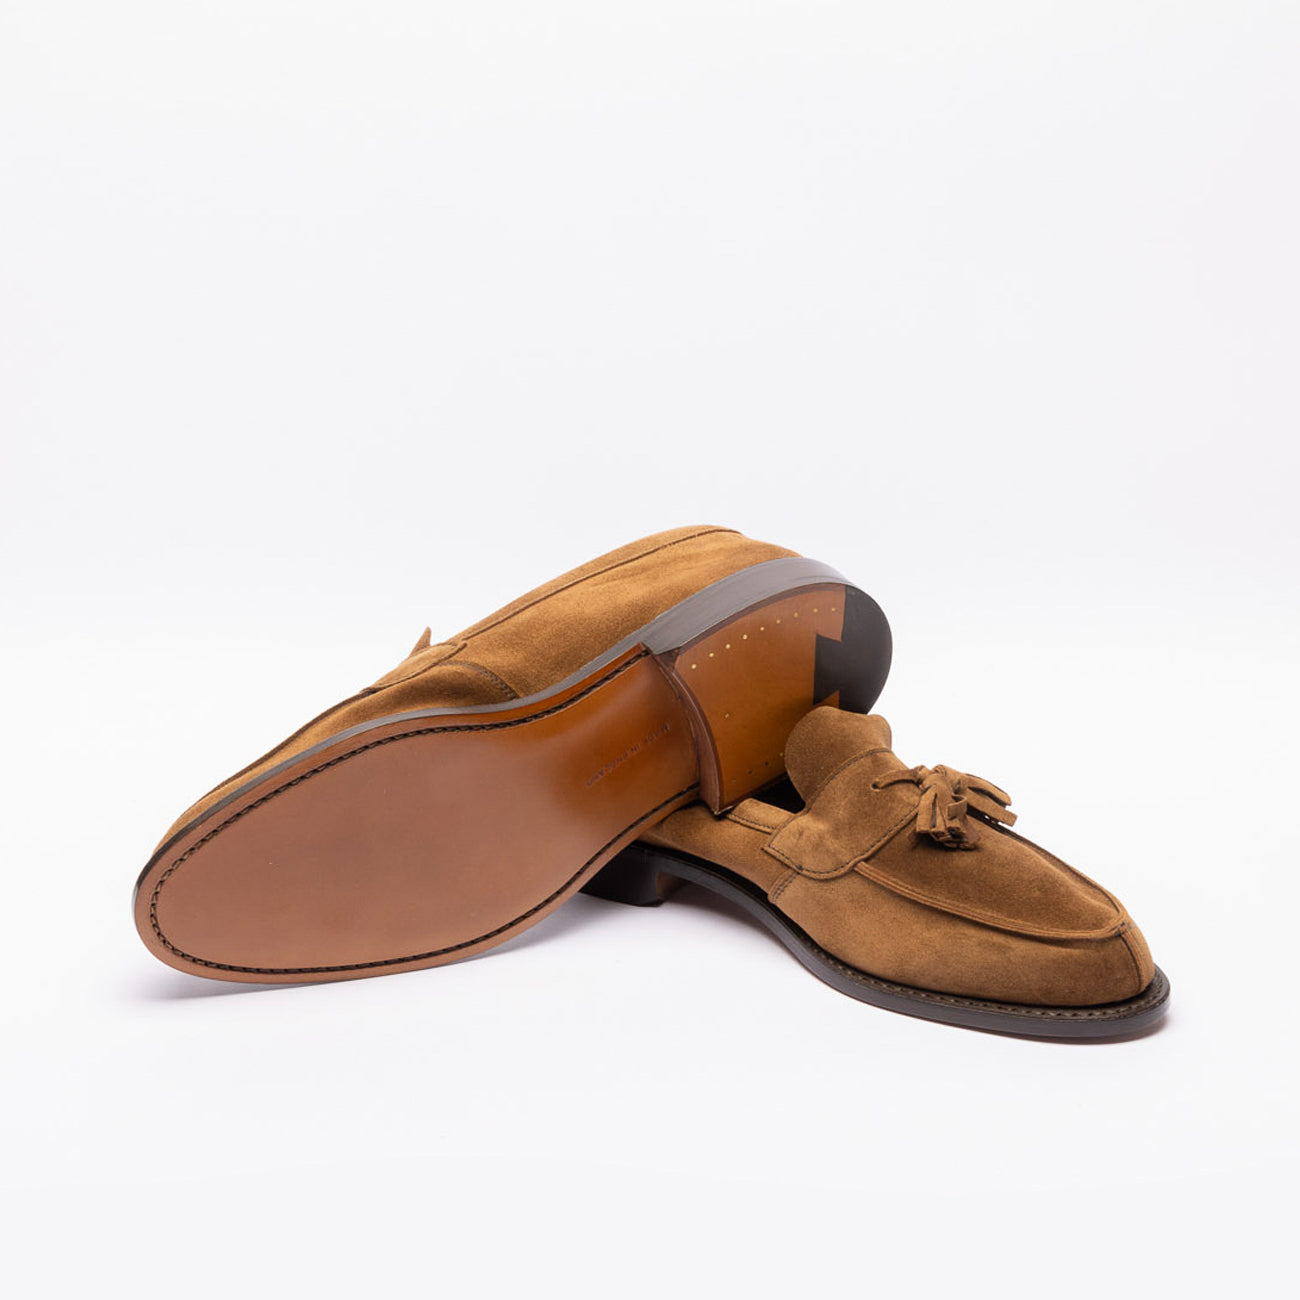 Tricker's Tony tassel loafers in brown suede (Cubana suede)